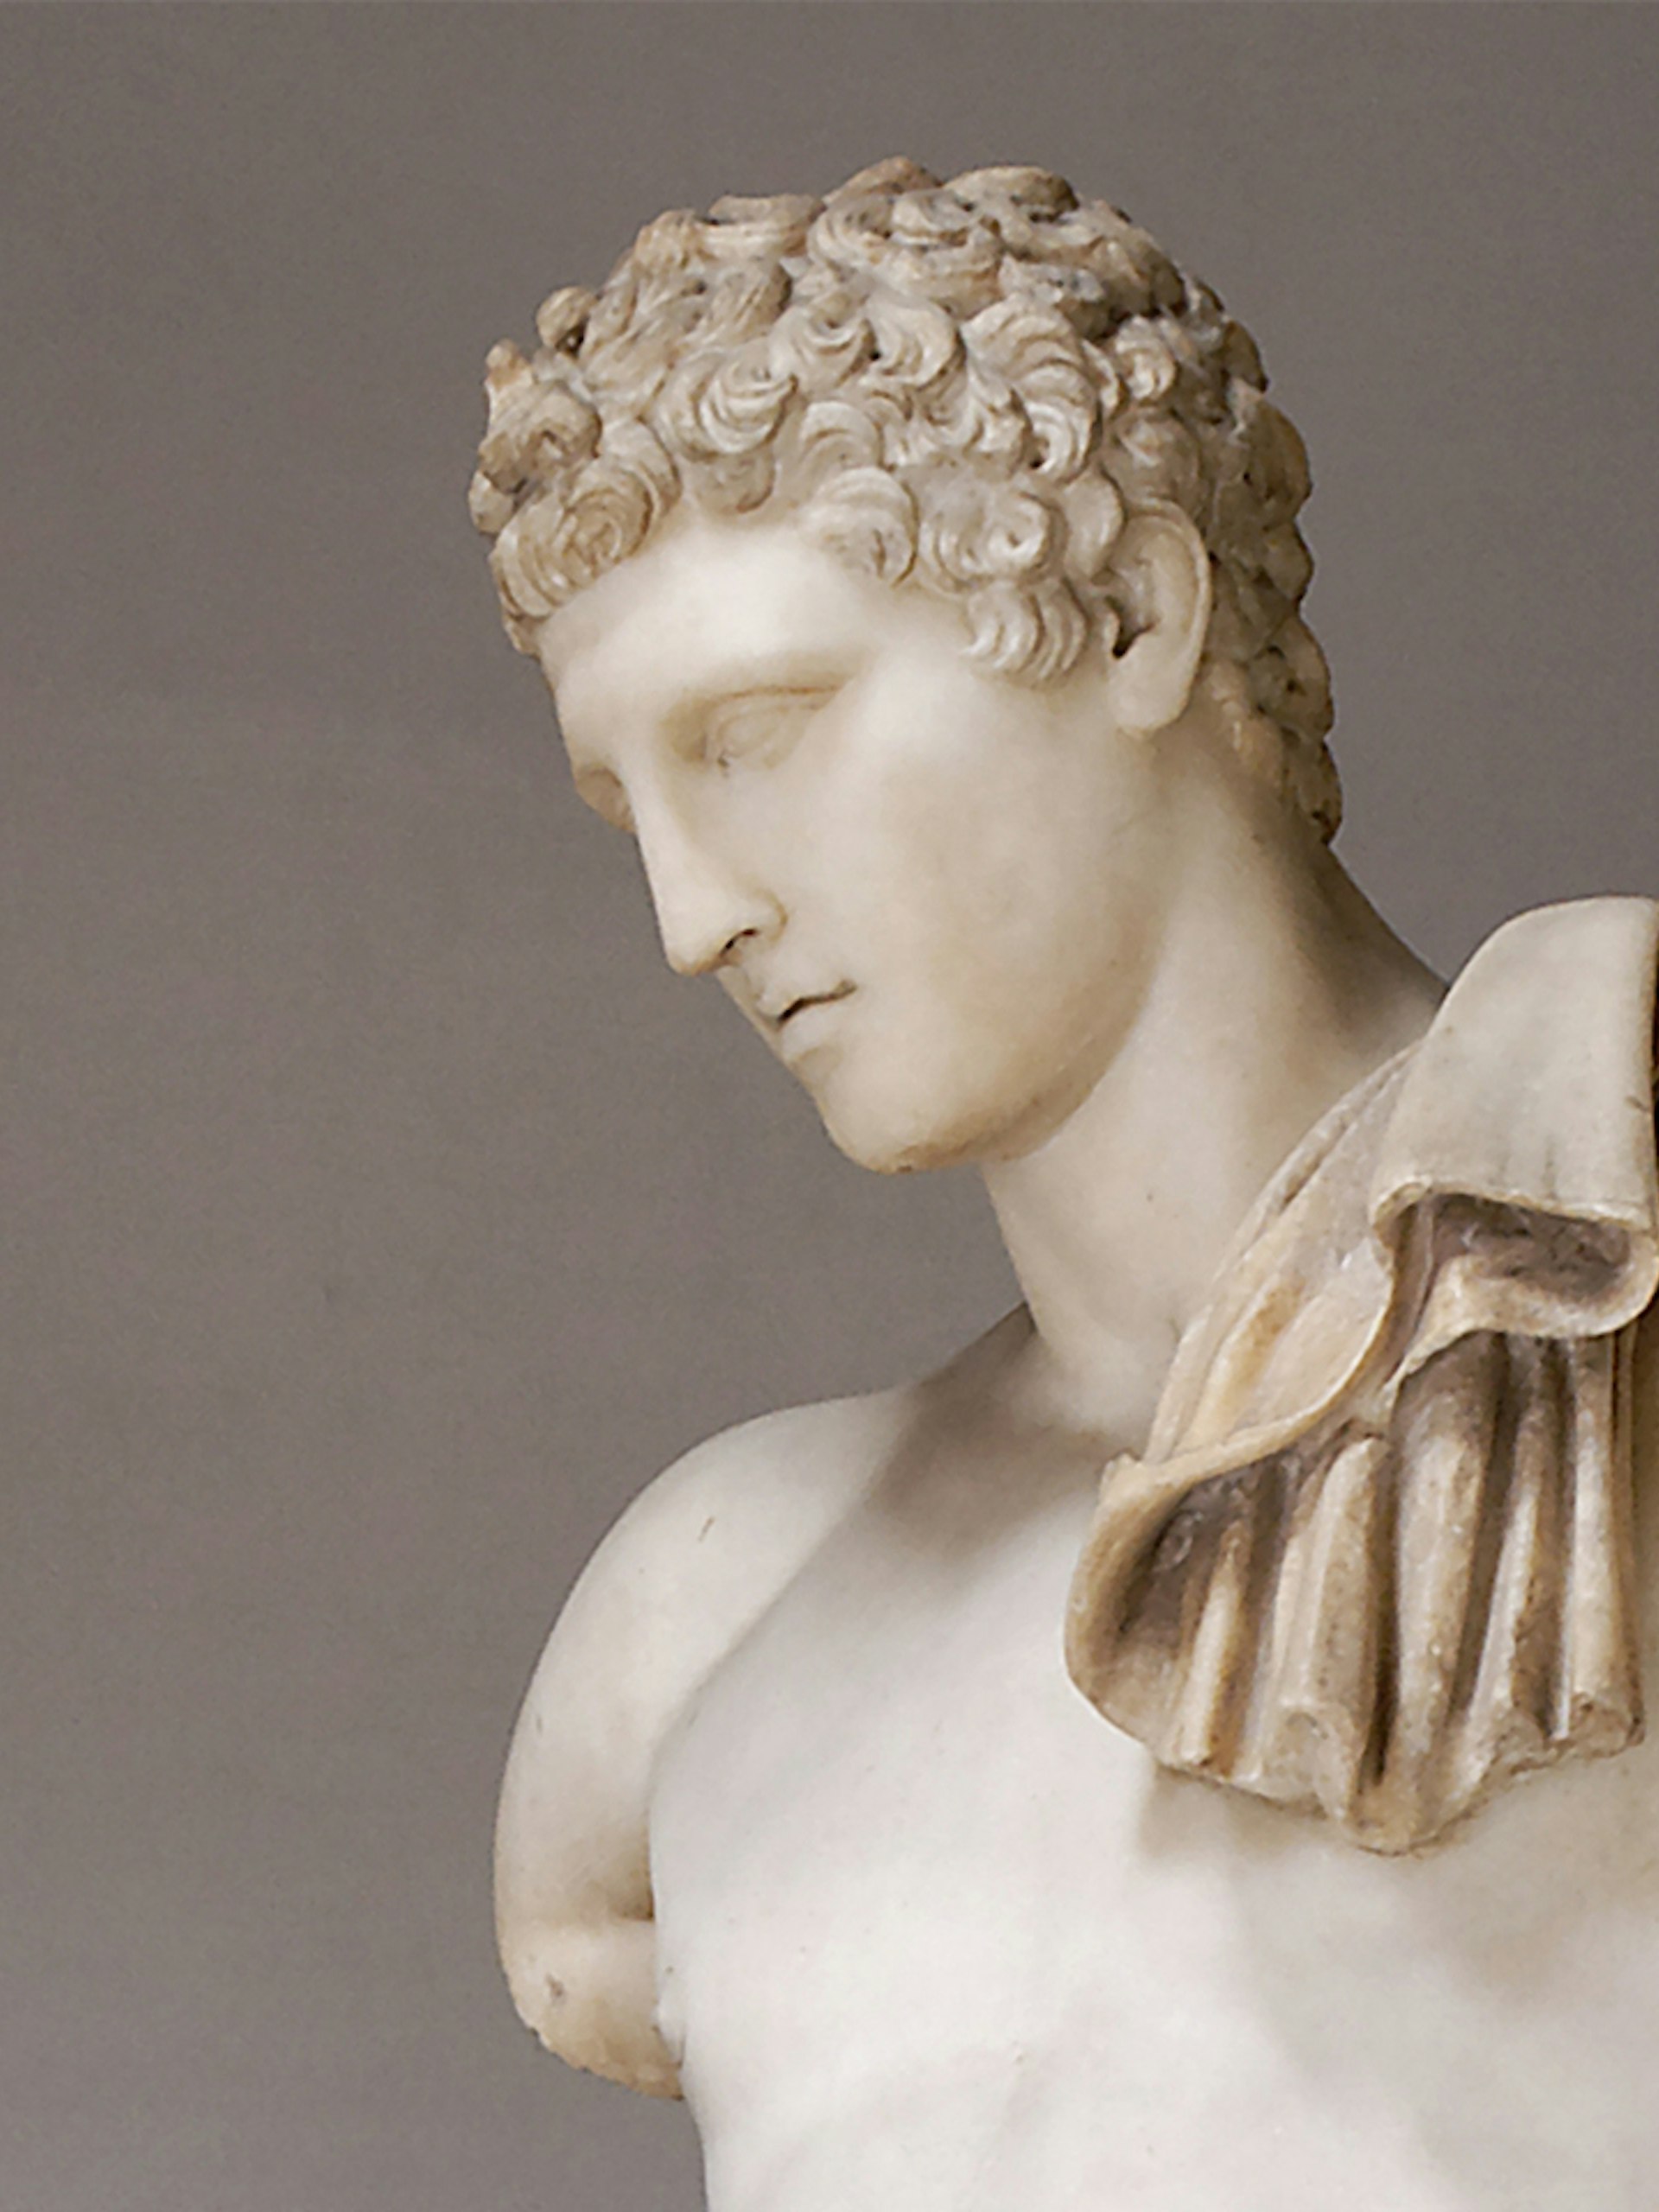 Hermes, Greek God of Commerce (3:2)